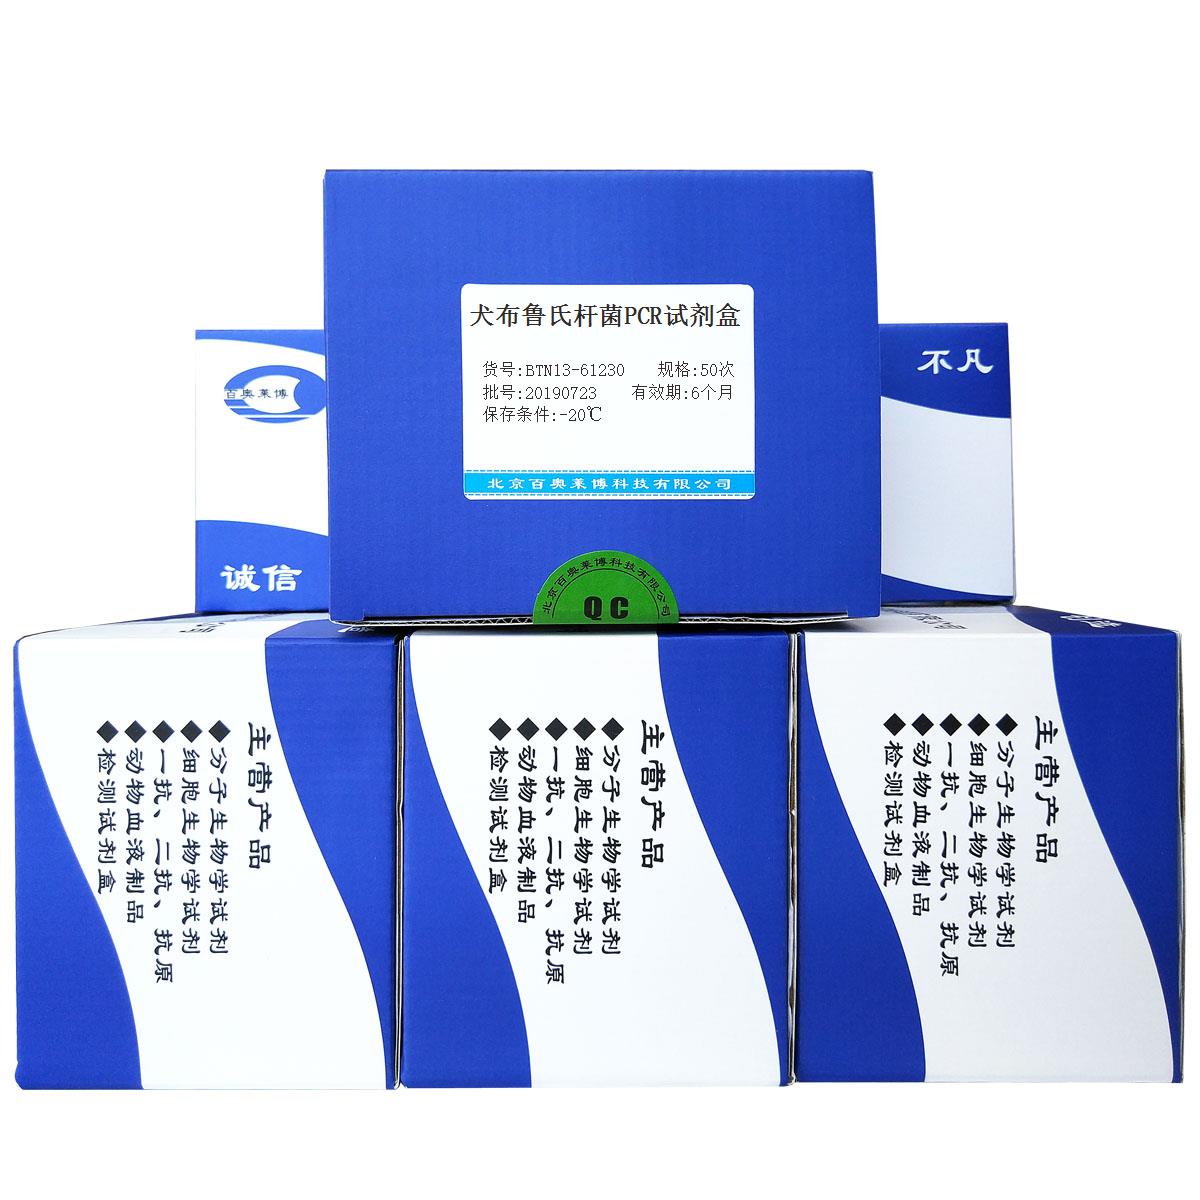 犬布鲁氏杆菌PCR试剂盒北京现货